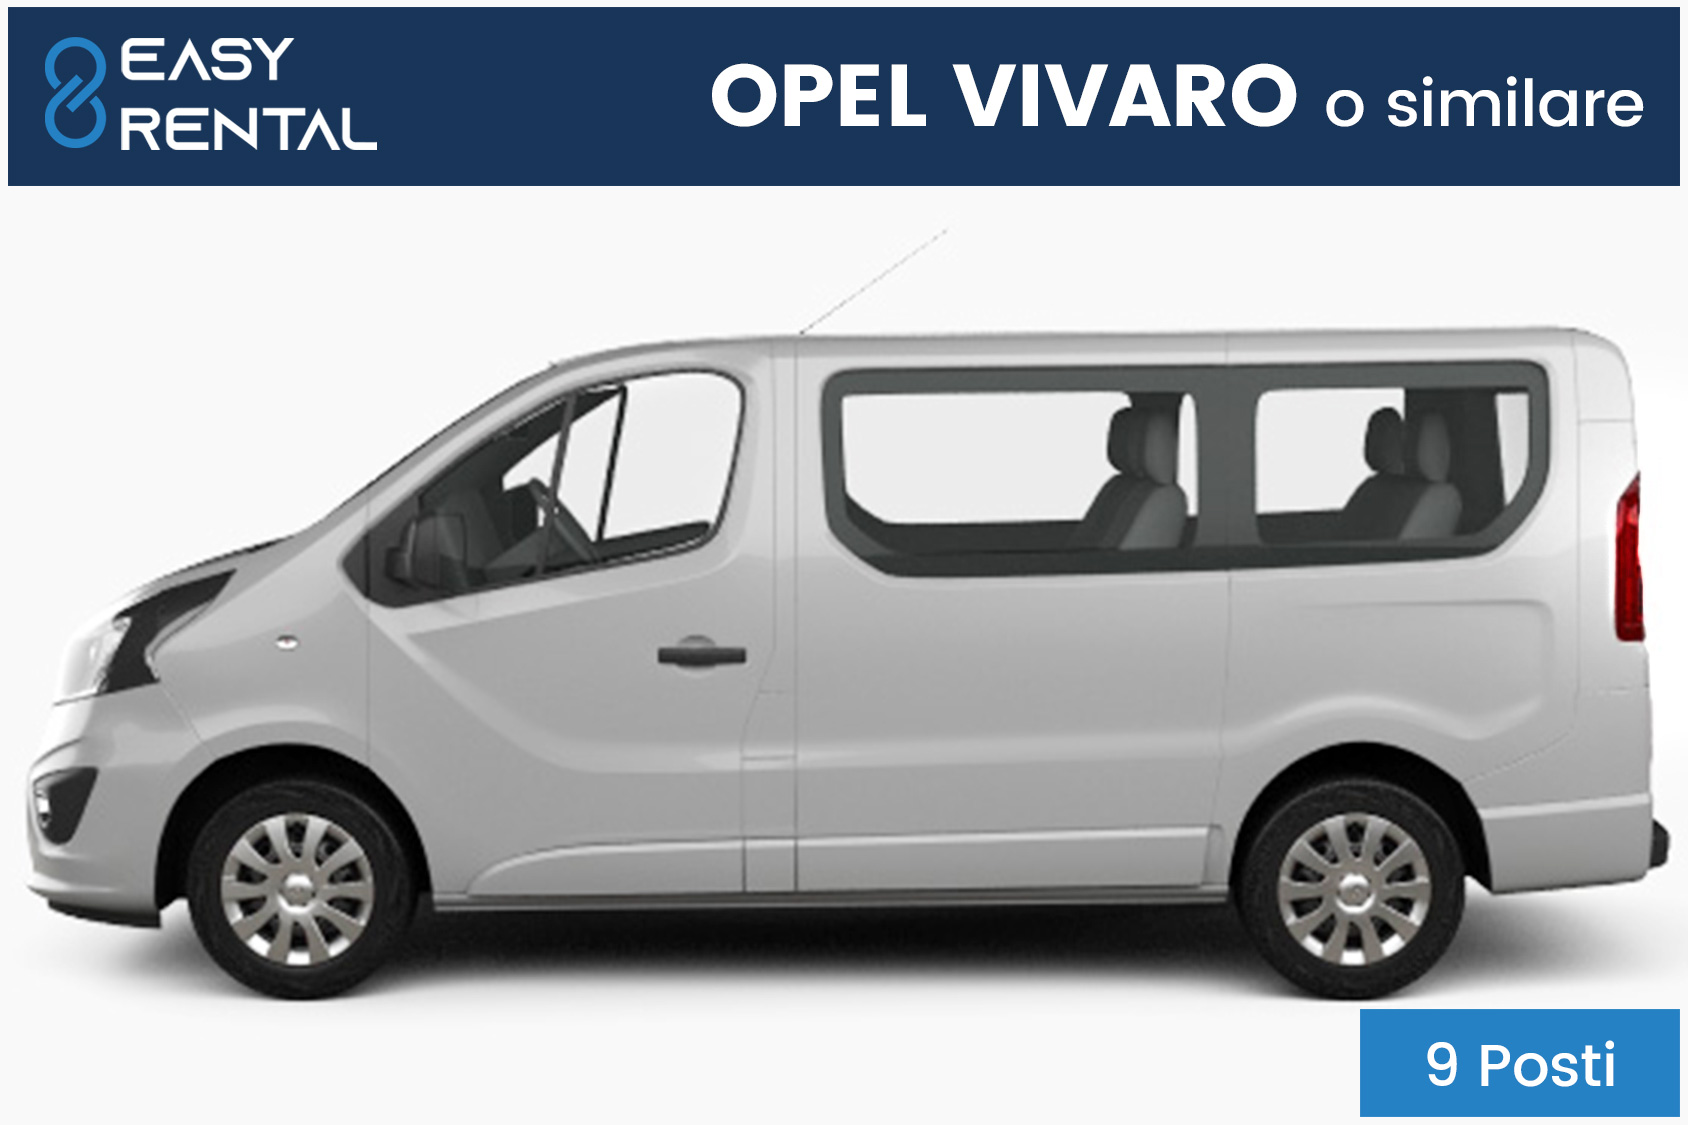 Opel Vivaro noleggio breve termine veicoli 9 posti passeggeri Verona e provincia